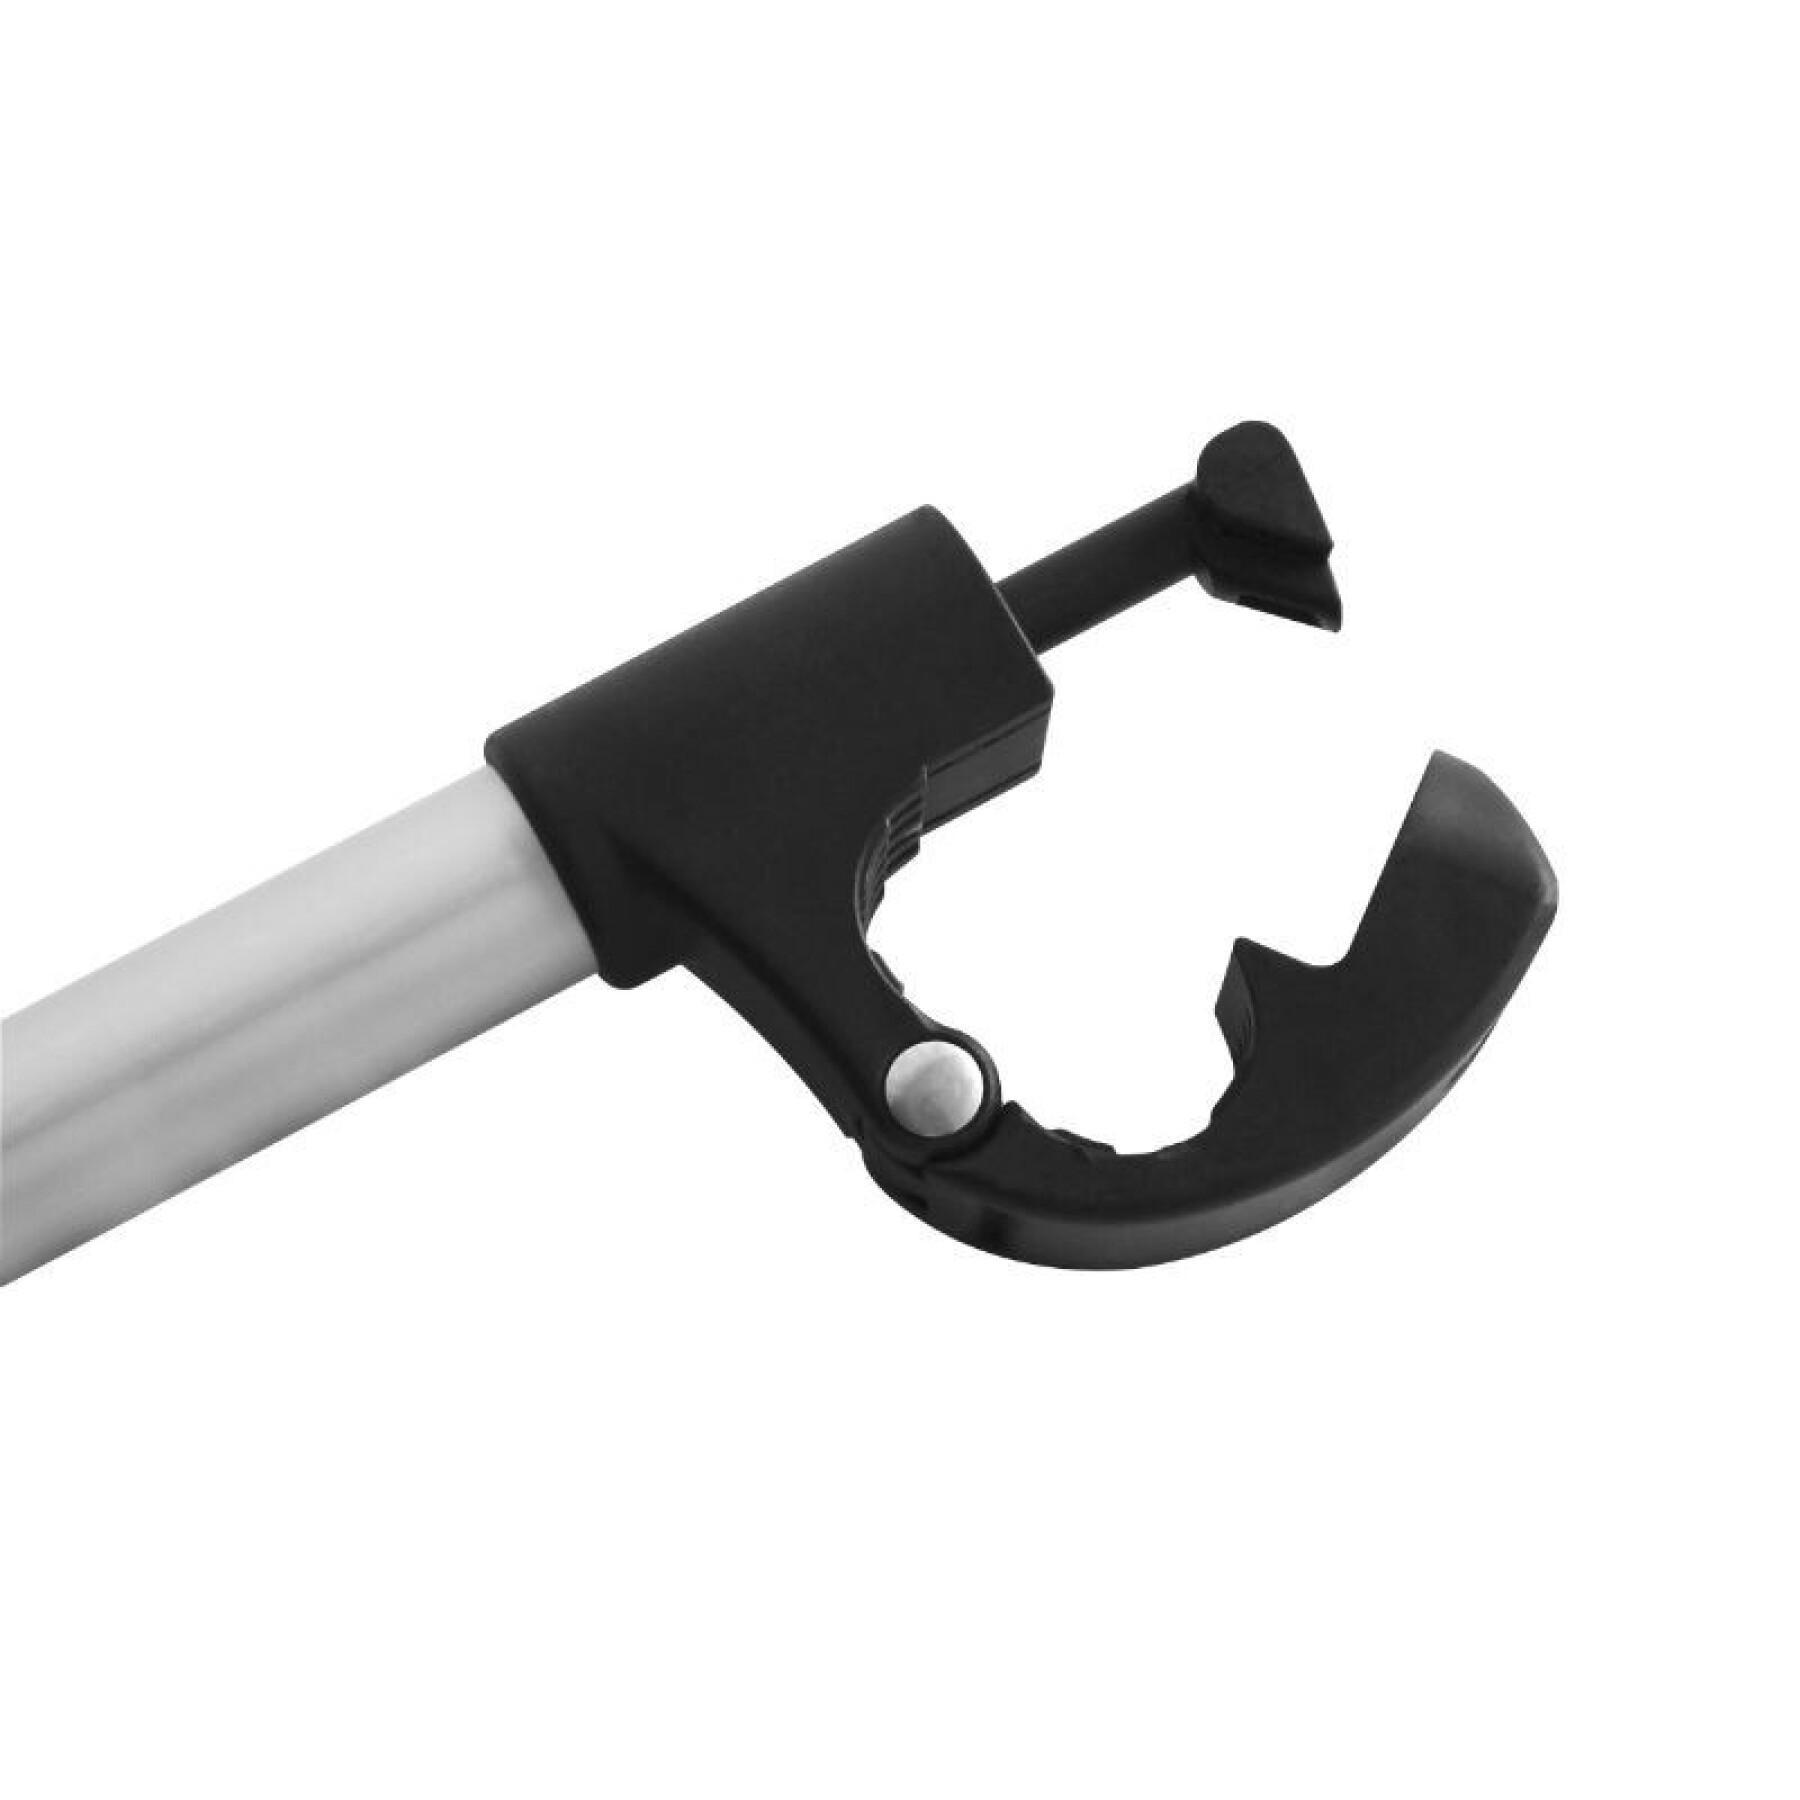 Bastidor de brazo fijo para portabicicletas de plataforma con dispositivo antirrobo (barra en U) para crow basic-amber y otras marcas Peruzzo 32 cm